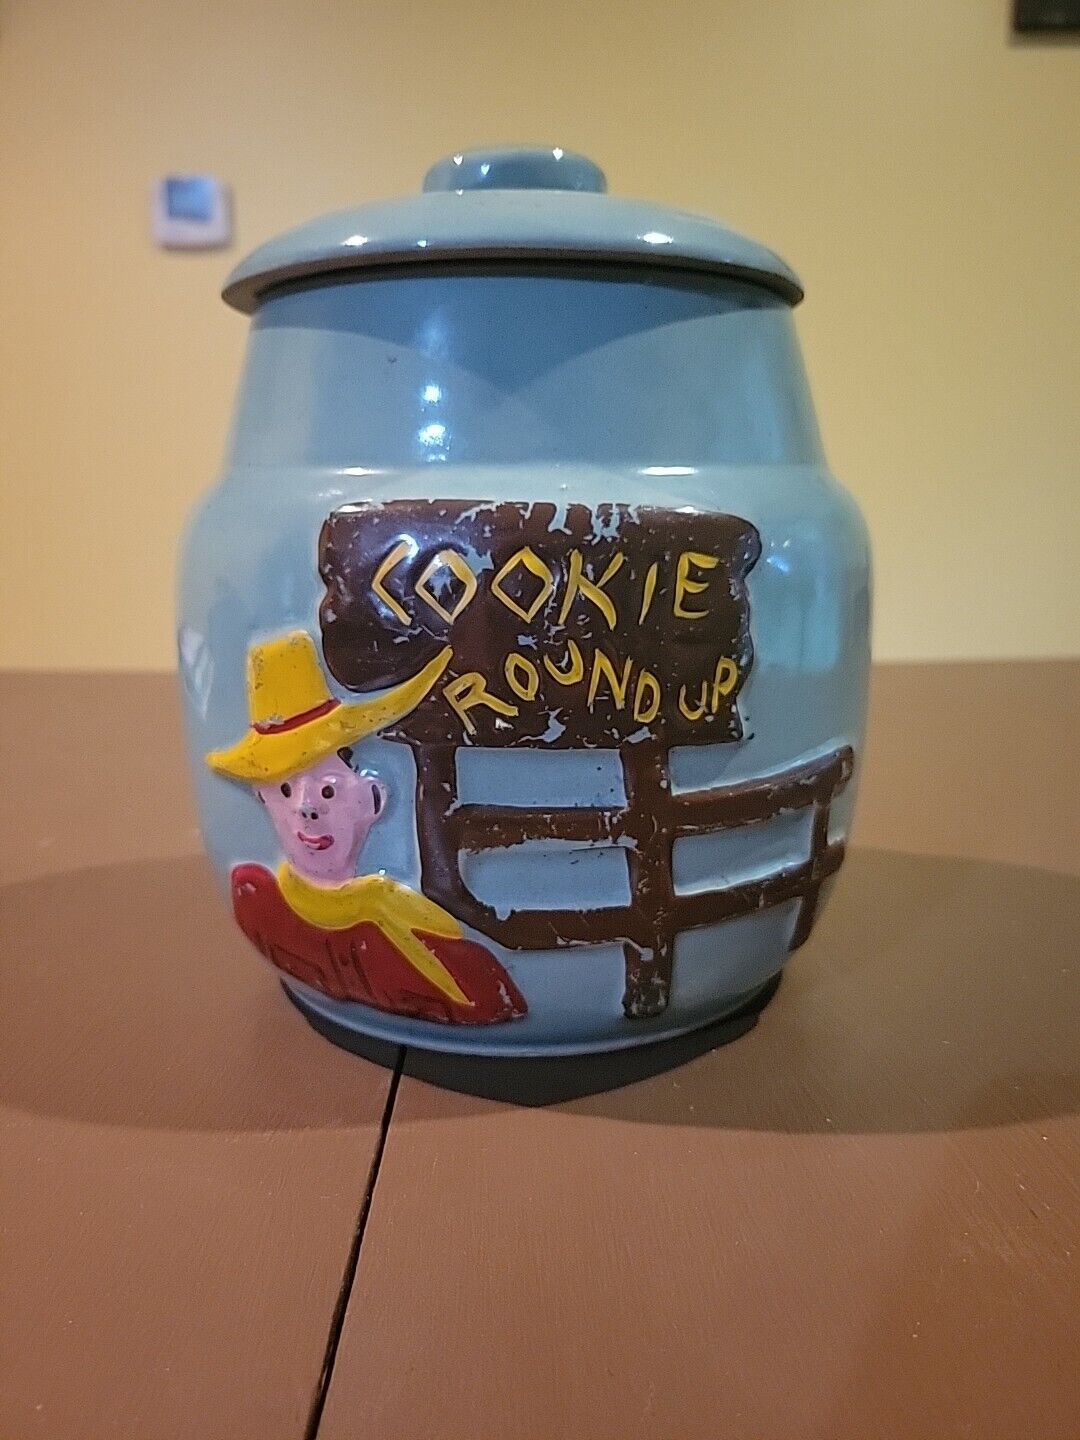 Vintage Mid Century Cowboy Cookie Jar Ceramic Roundup Teal